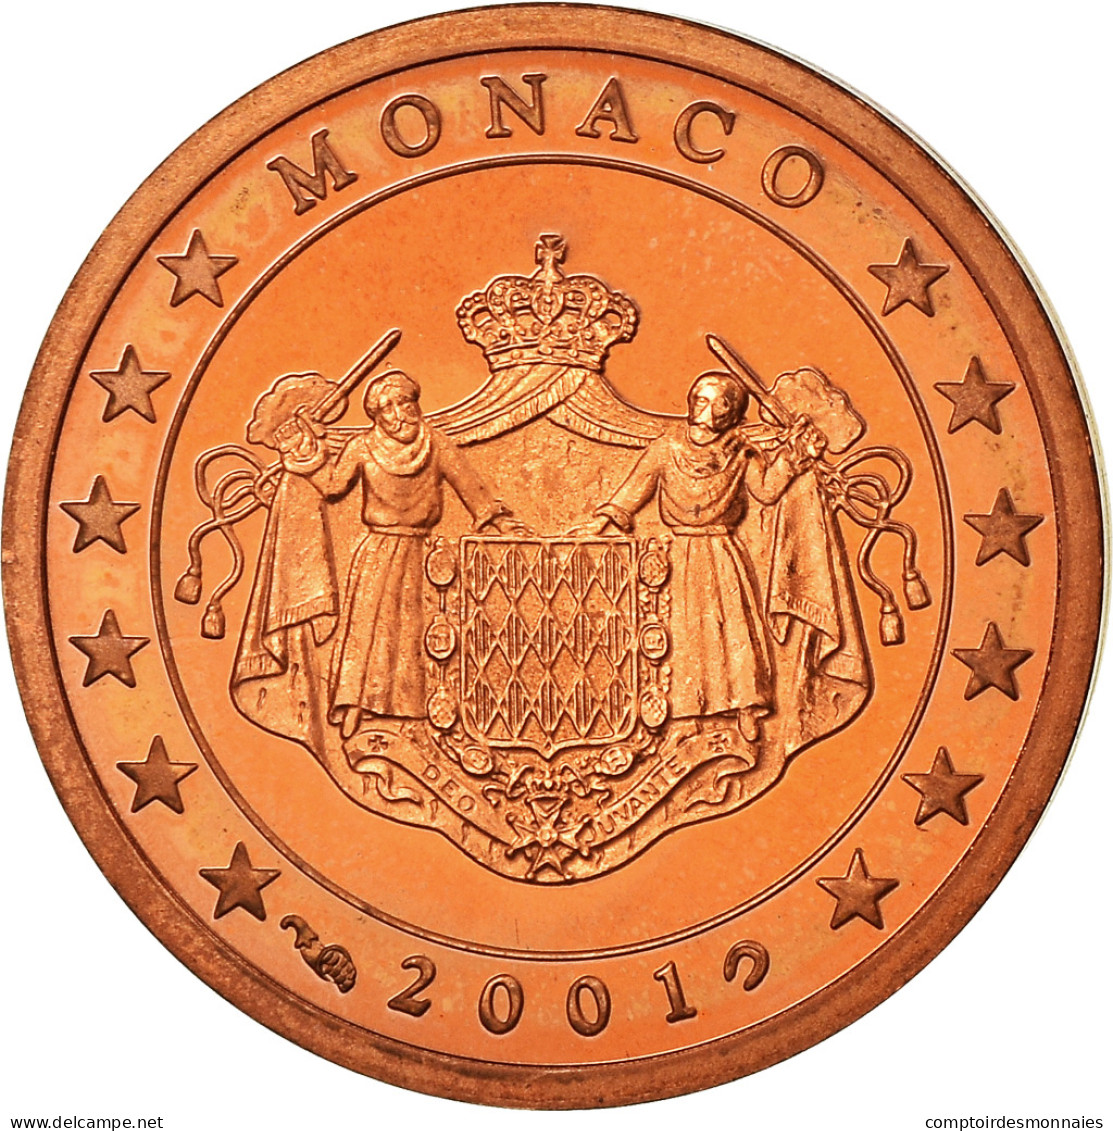 Monaco, 2 Euro Cent, 2001, Proof, FDC, Copper Plated Steel, KM:168 - Monaco